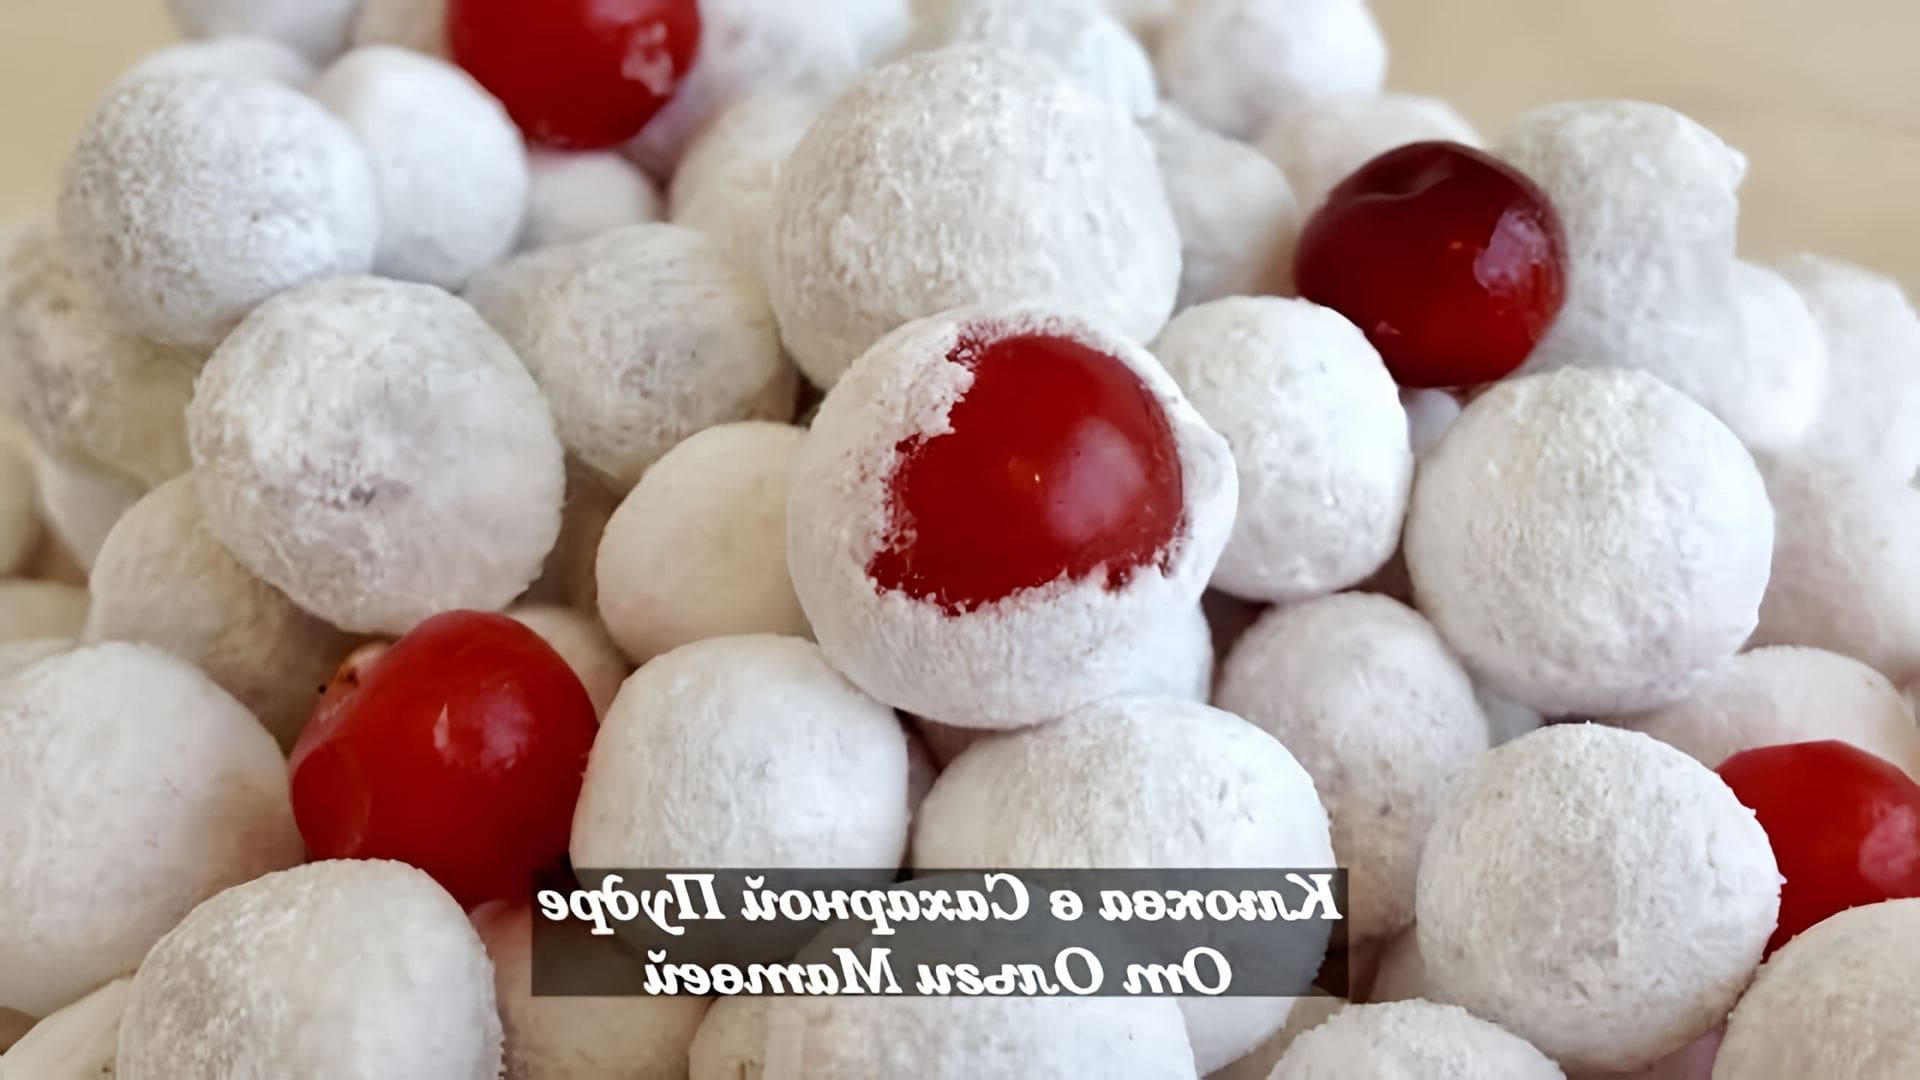 В этом видео демонстрируется процесс приготовления конфет из клюквы в сахарной пудре